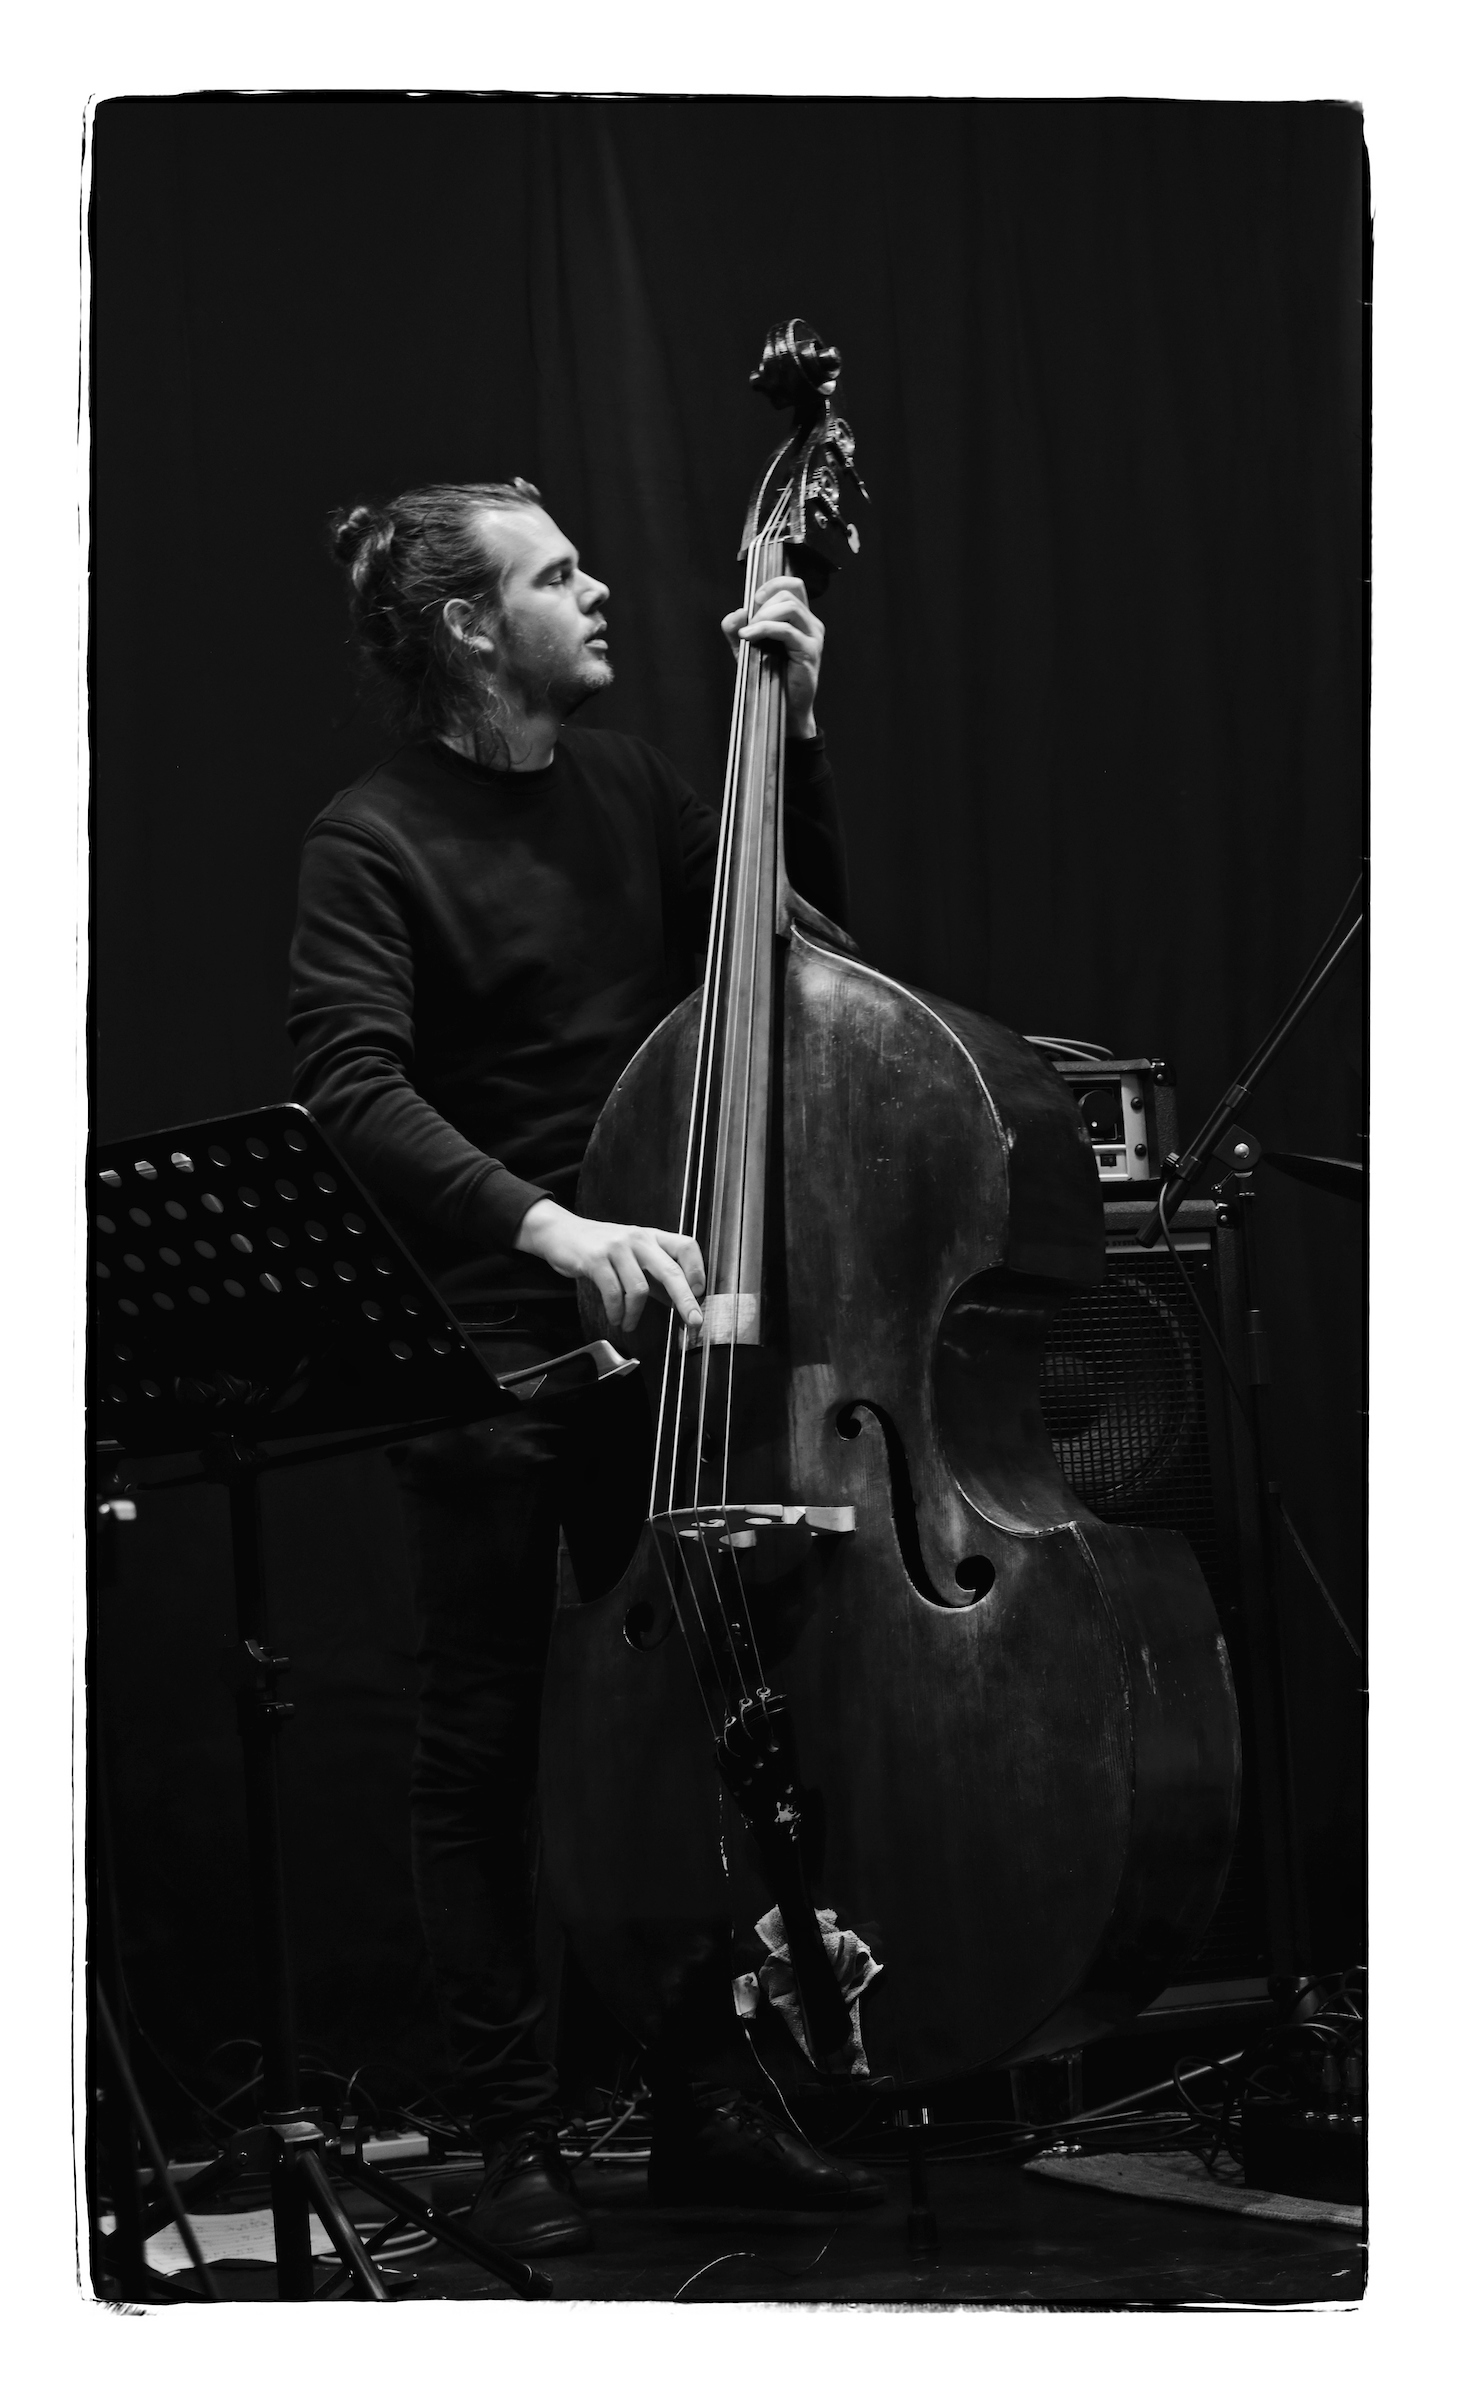 Lukas Traxel bass DSCF0070 Bw wRjpg